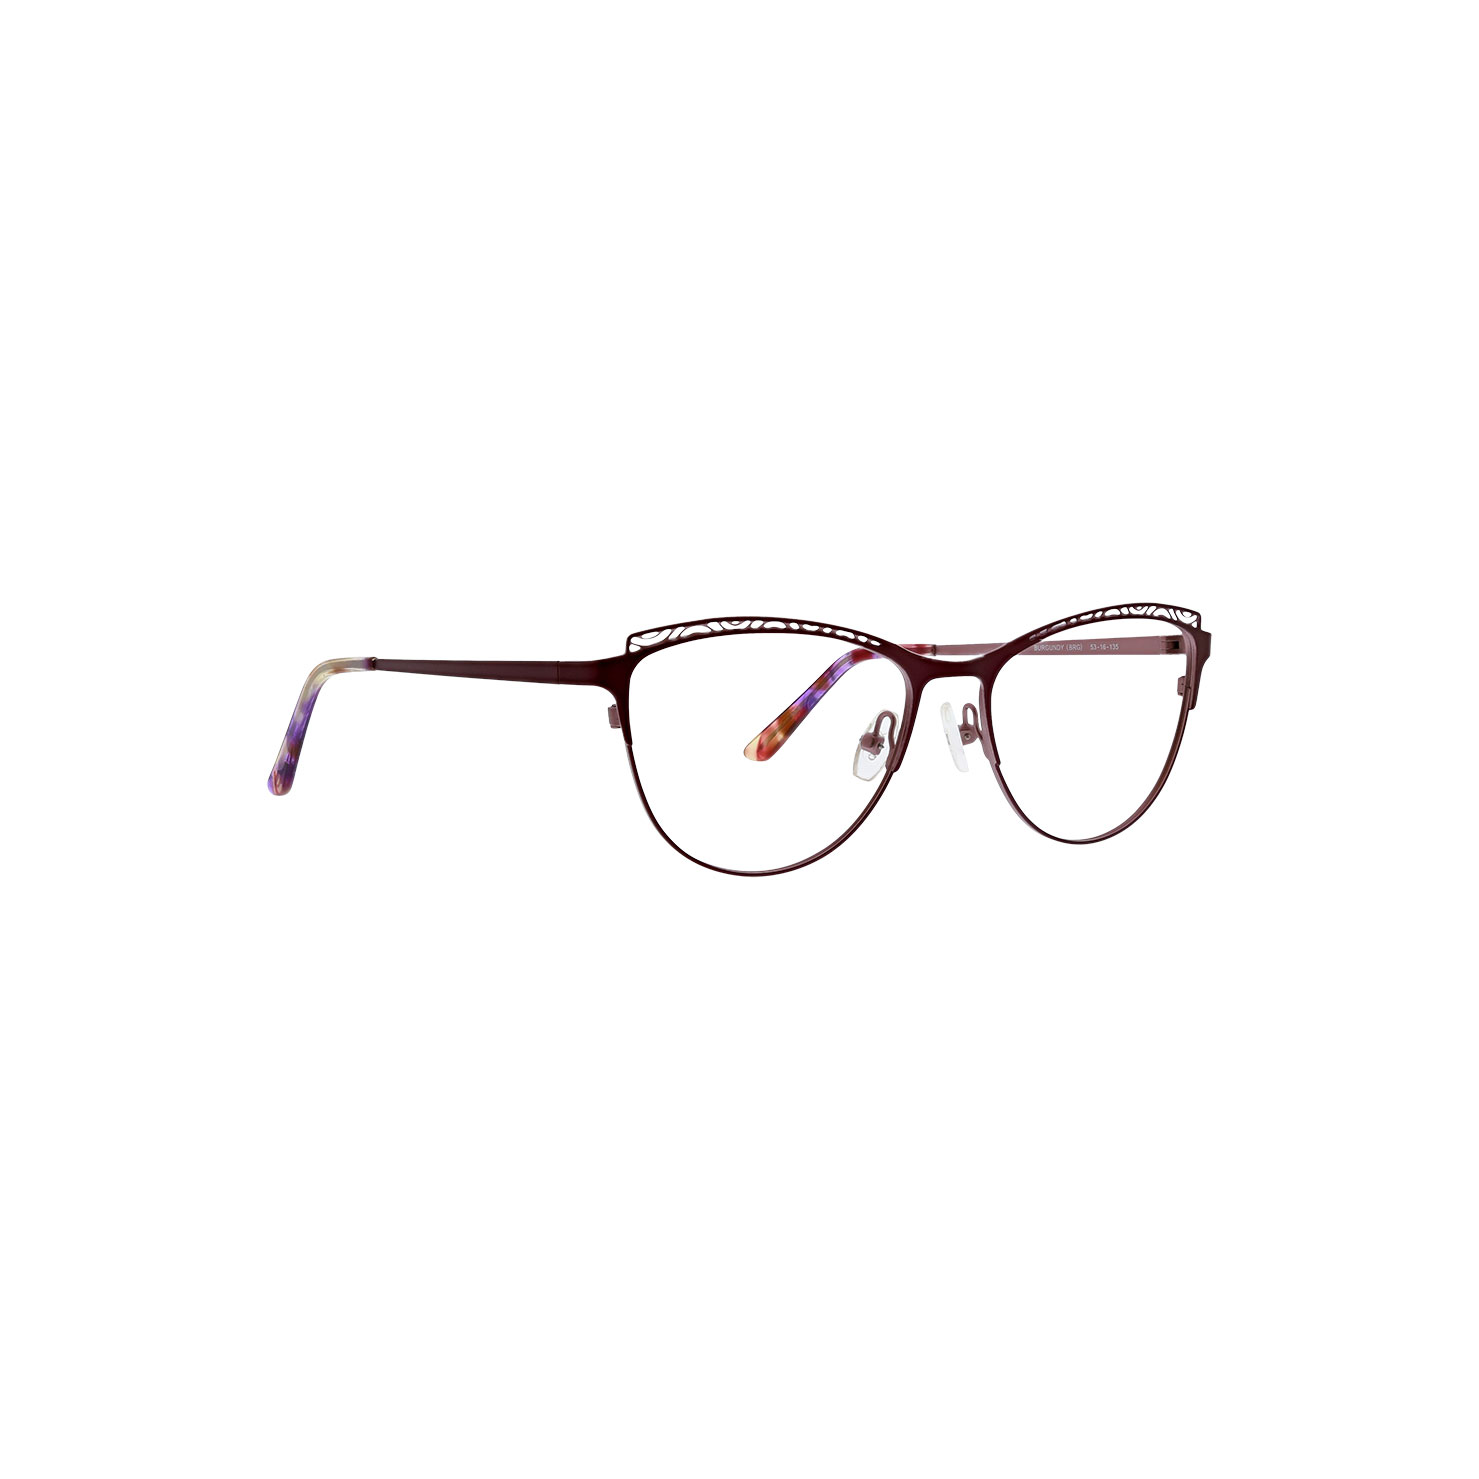 XOXO Astoria Eyeglasses